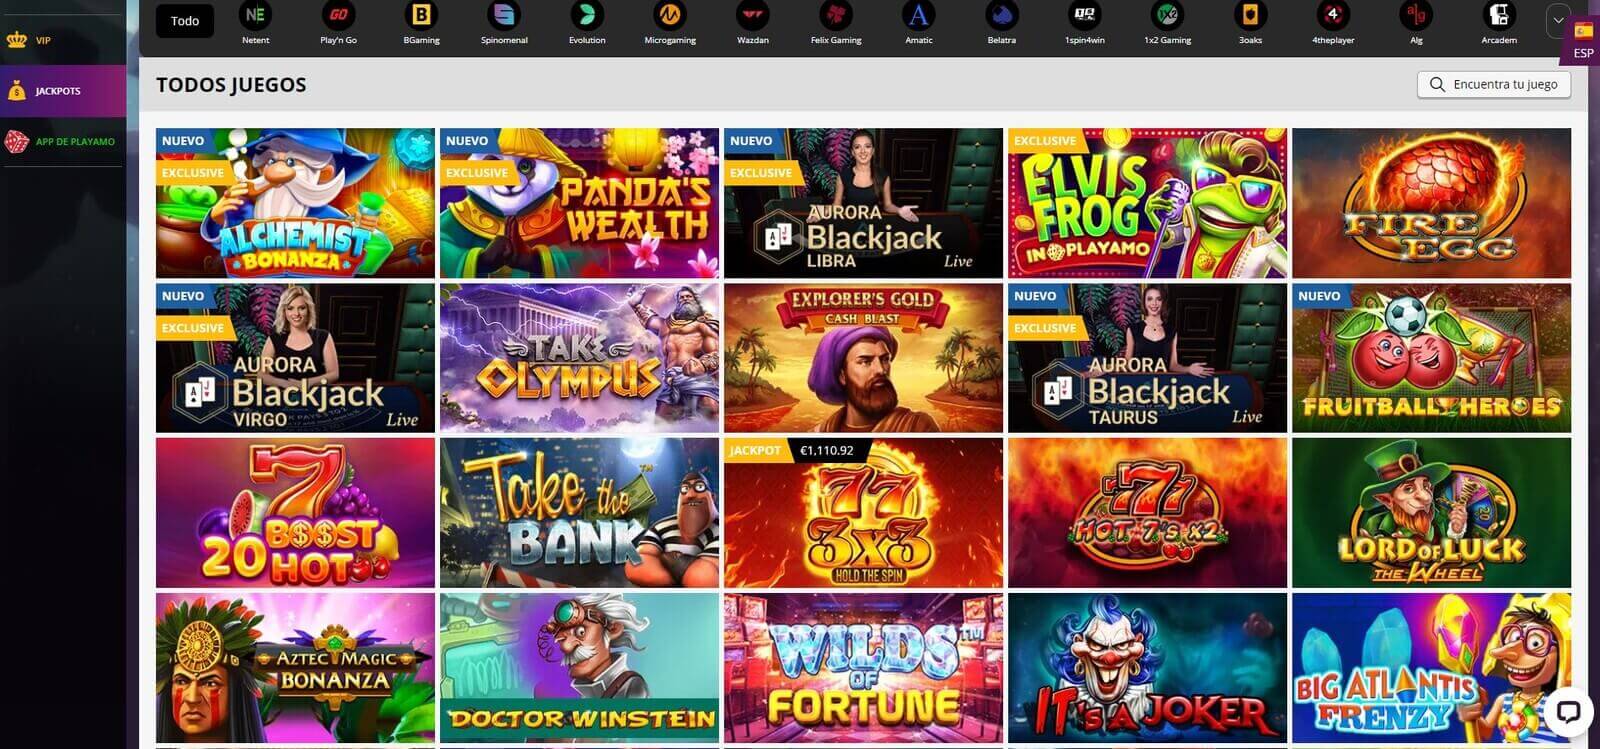 Mejores juegos de PlayAmo Casino online en América Latina